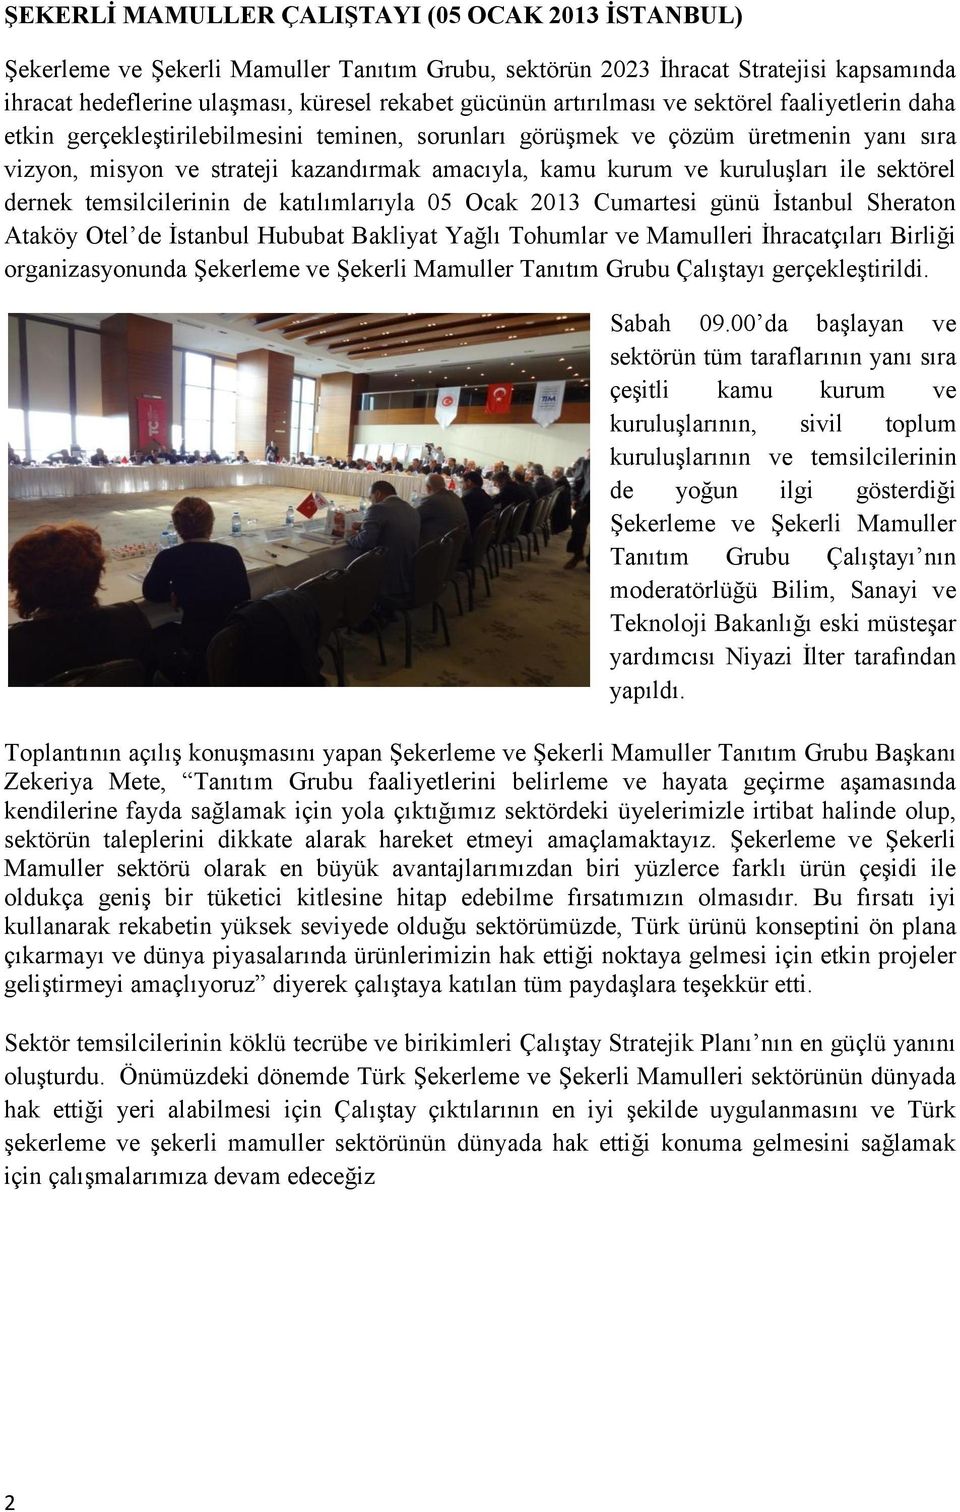 kuruluşları ile sektörel dernek temsilcilerinin de katılımlarıyla 05 Ocak 2013 Cumartesi günü İstanbul Sheraton Ataköy Otel de İstanbul Hububat Bakliyat Yağlı Tohumlar ve Mamulleri İhracatçıları